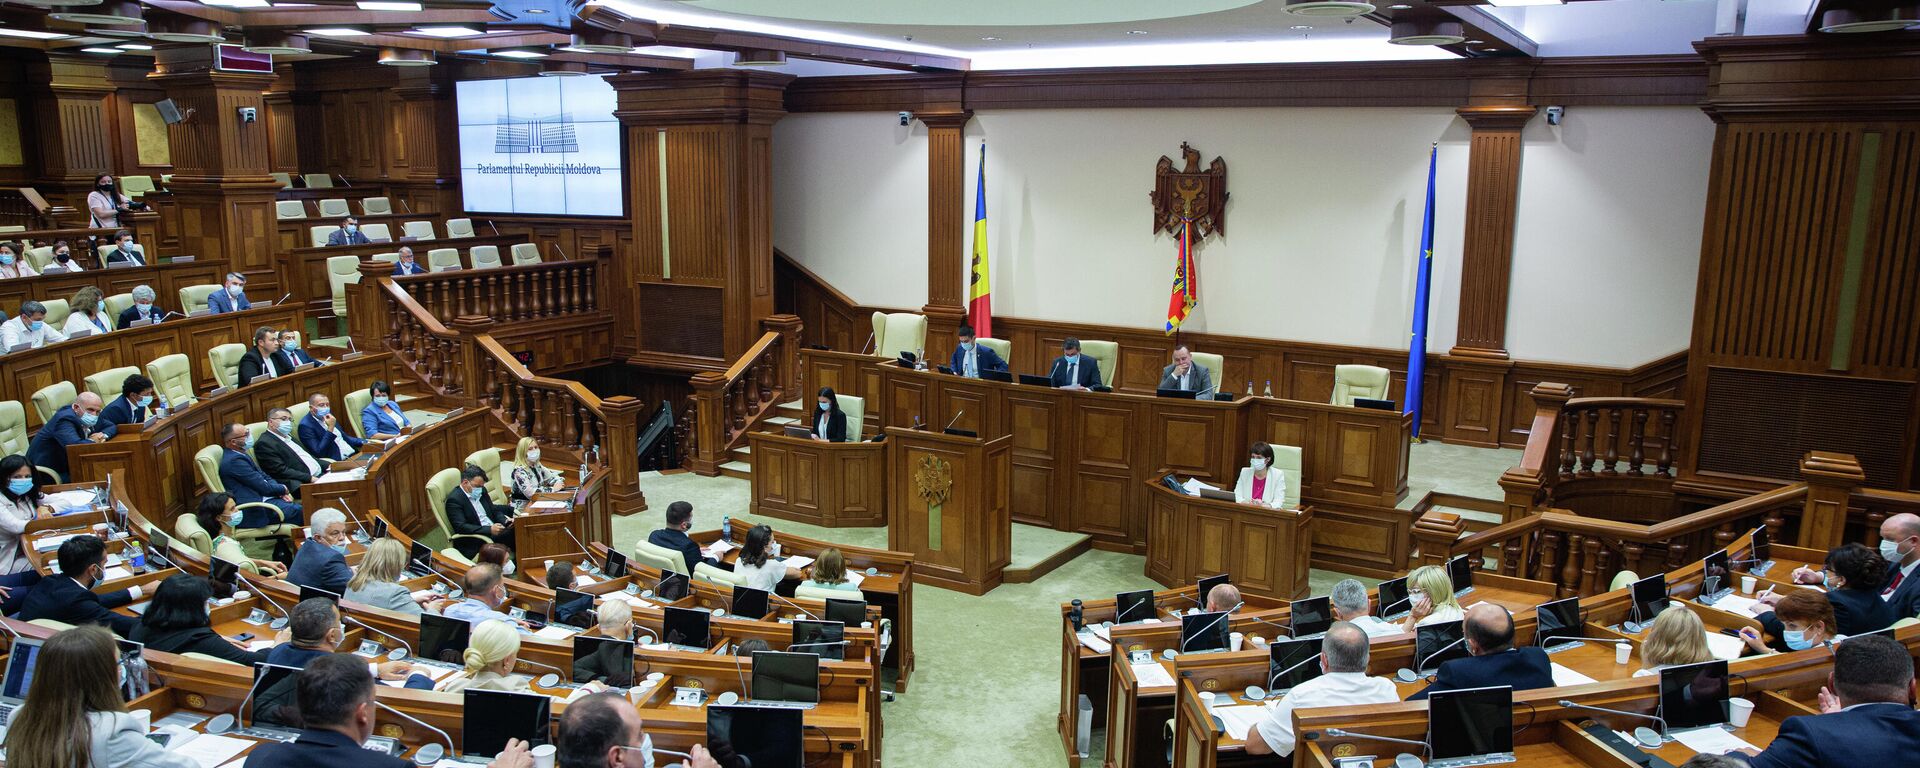 Deputați în Parlamentul Republicii Moldova  - Sputnik Moldova, 1920, 14.10.2021